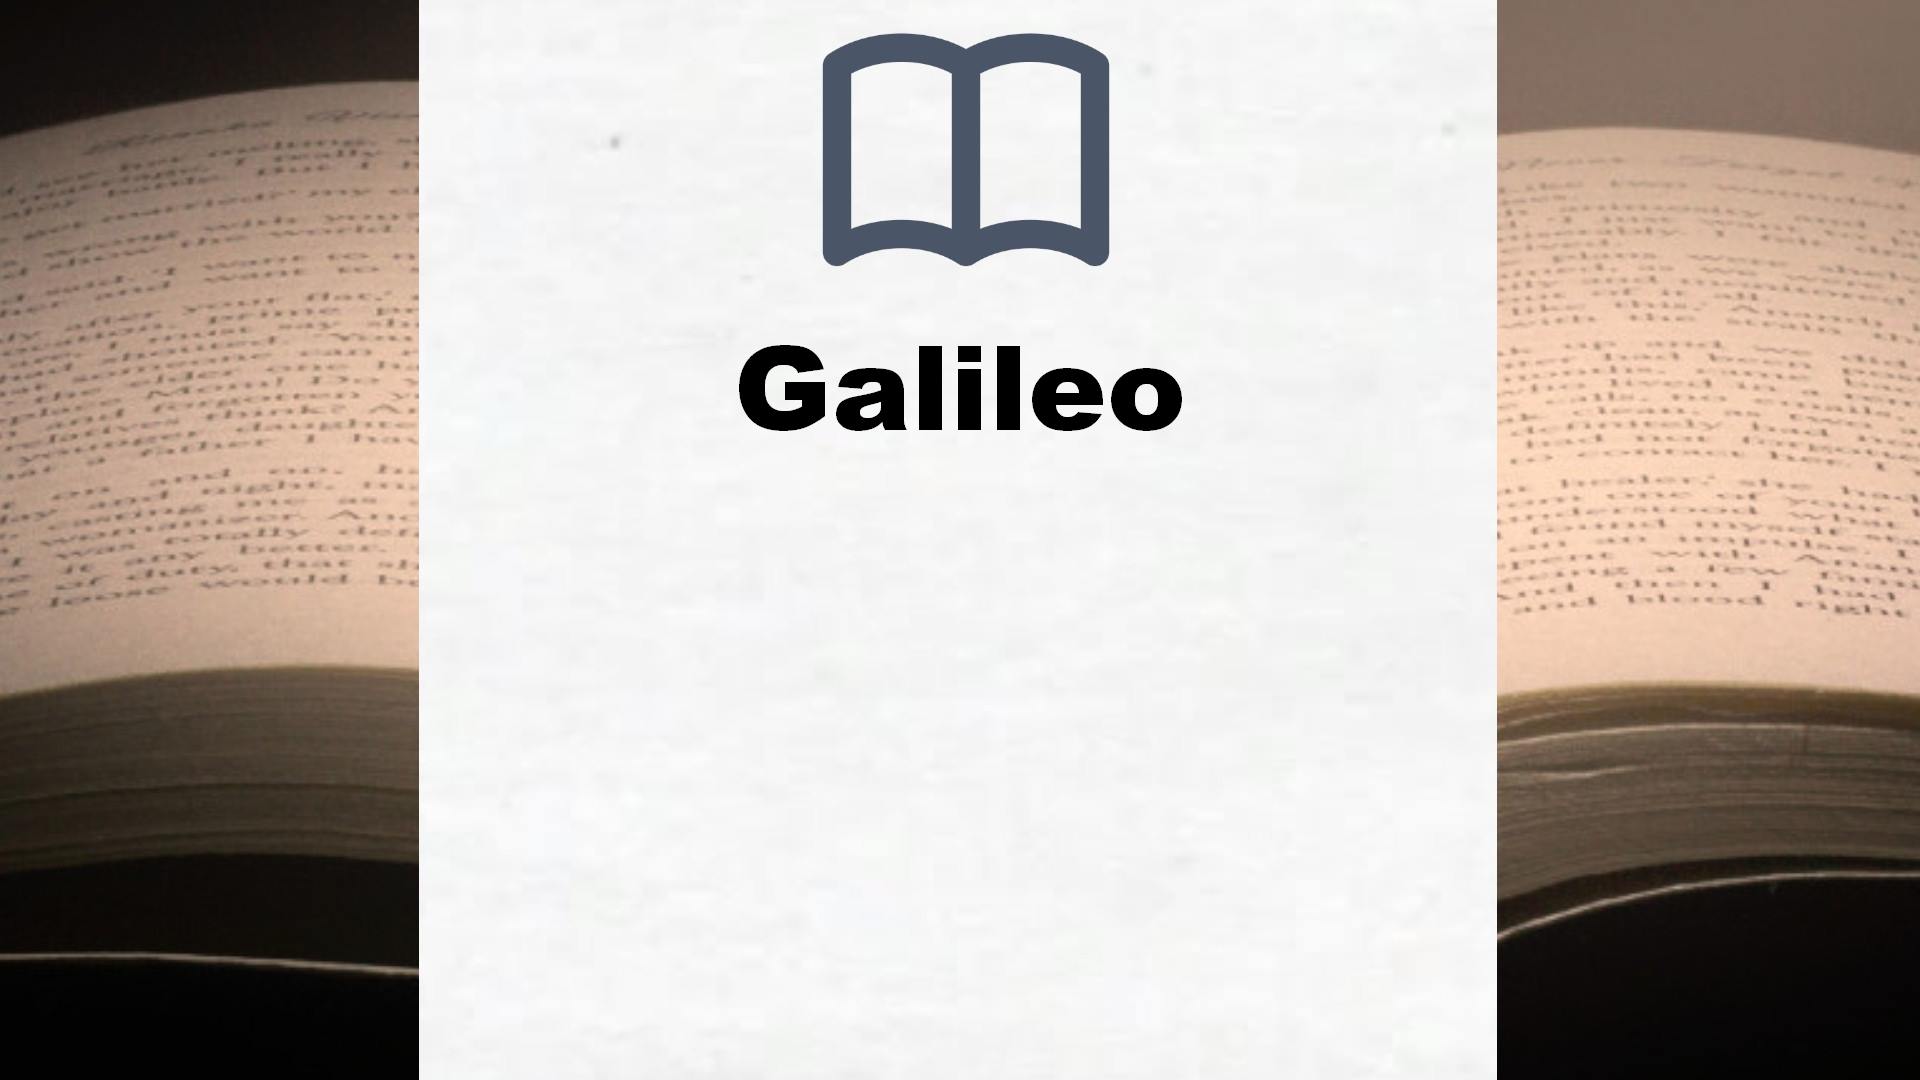 Bücher über Galileo